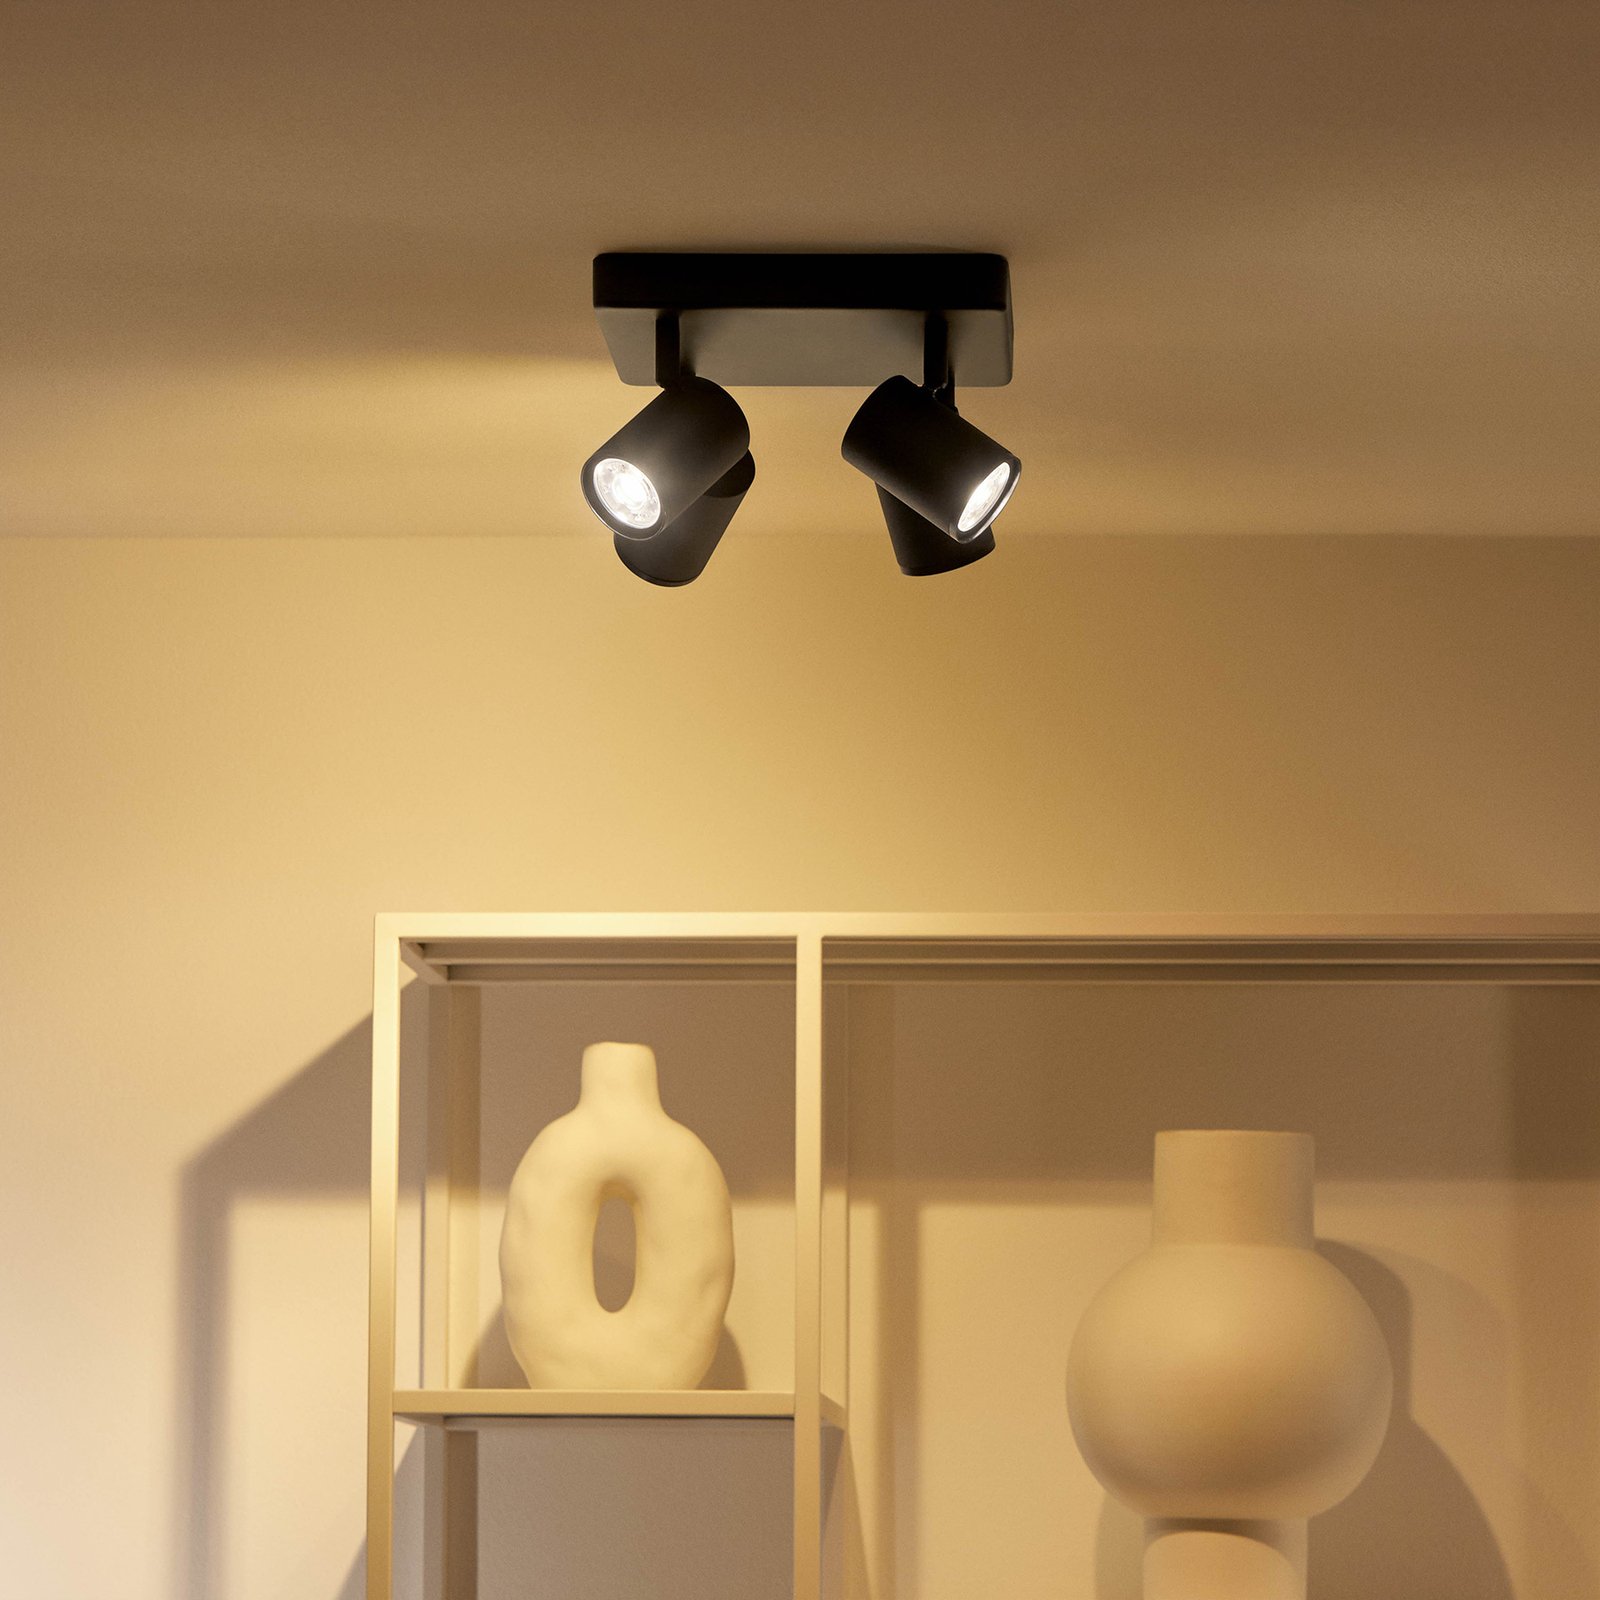 WiZ spot pour plafond LED Imageo, 4fl carré noir